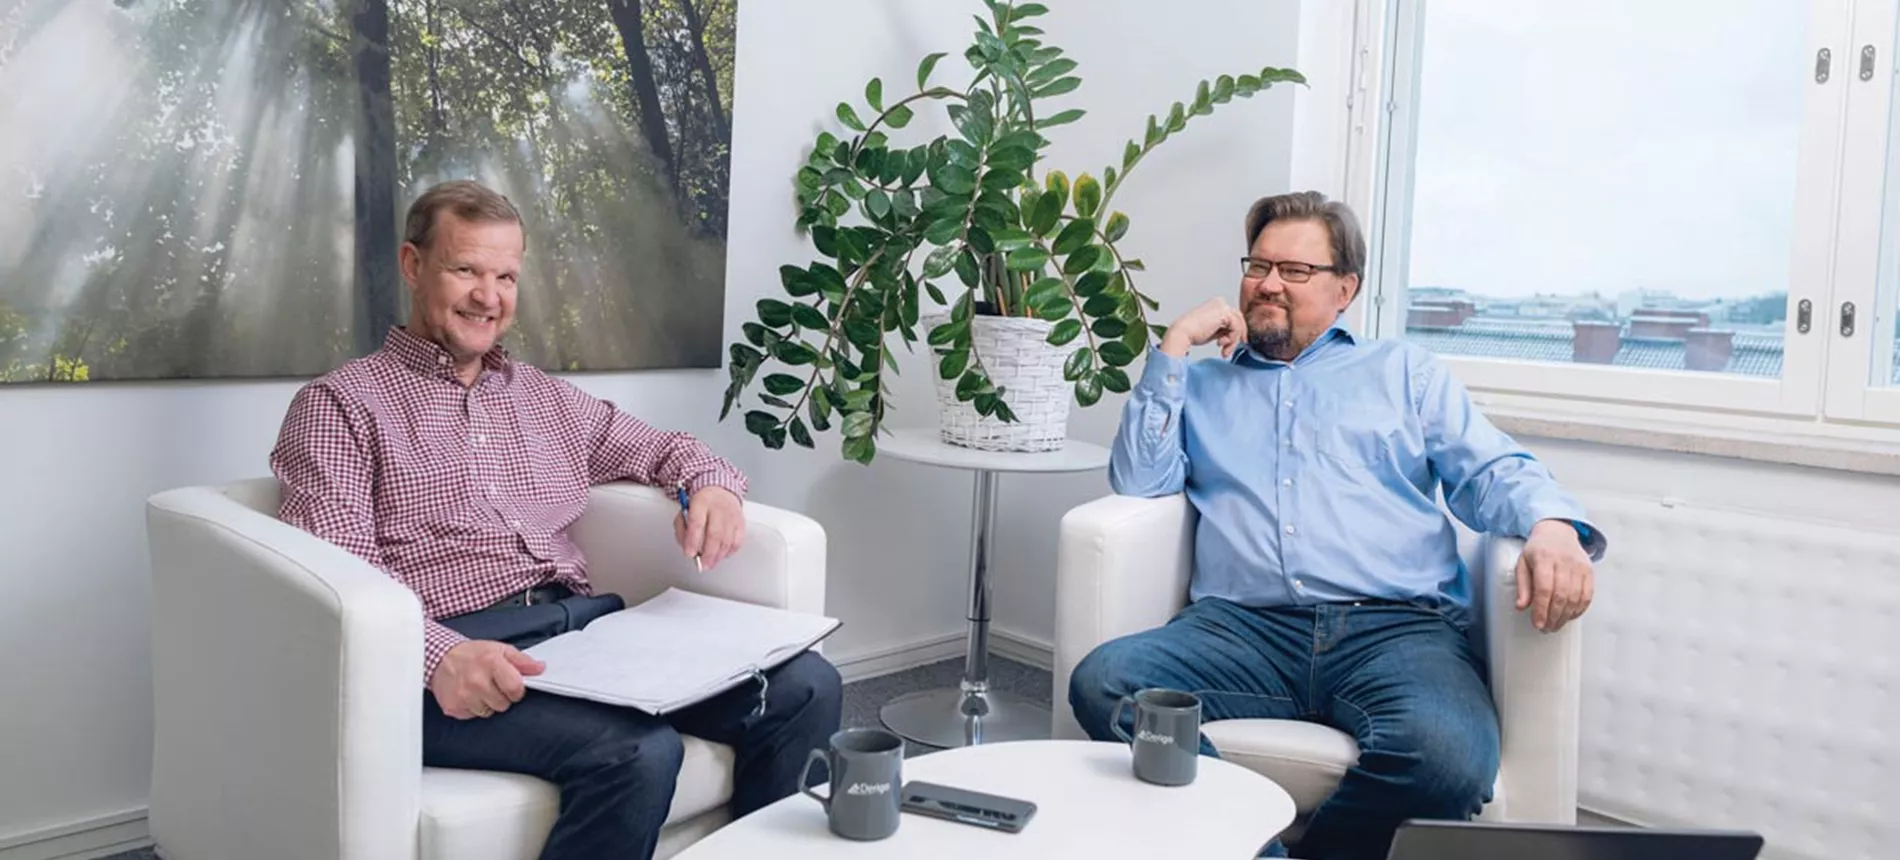 Derigo Oy:n Jukka Vornanen ja Pekka Aalto istuvat neuvotteluhuoneessa